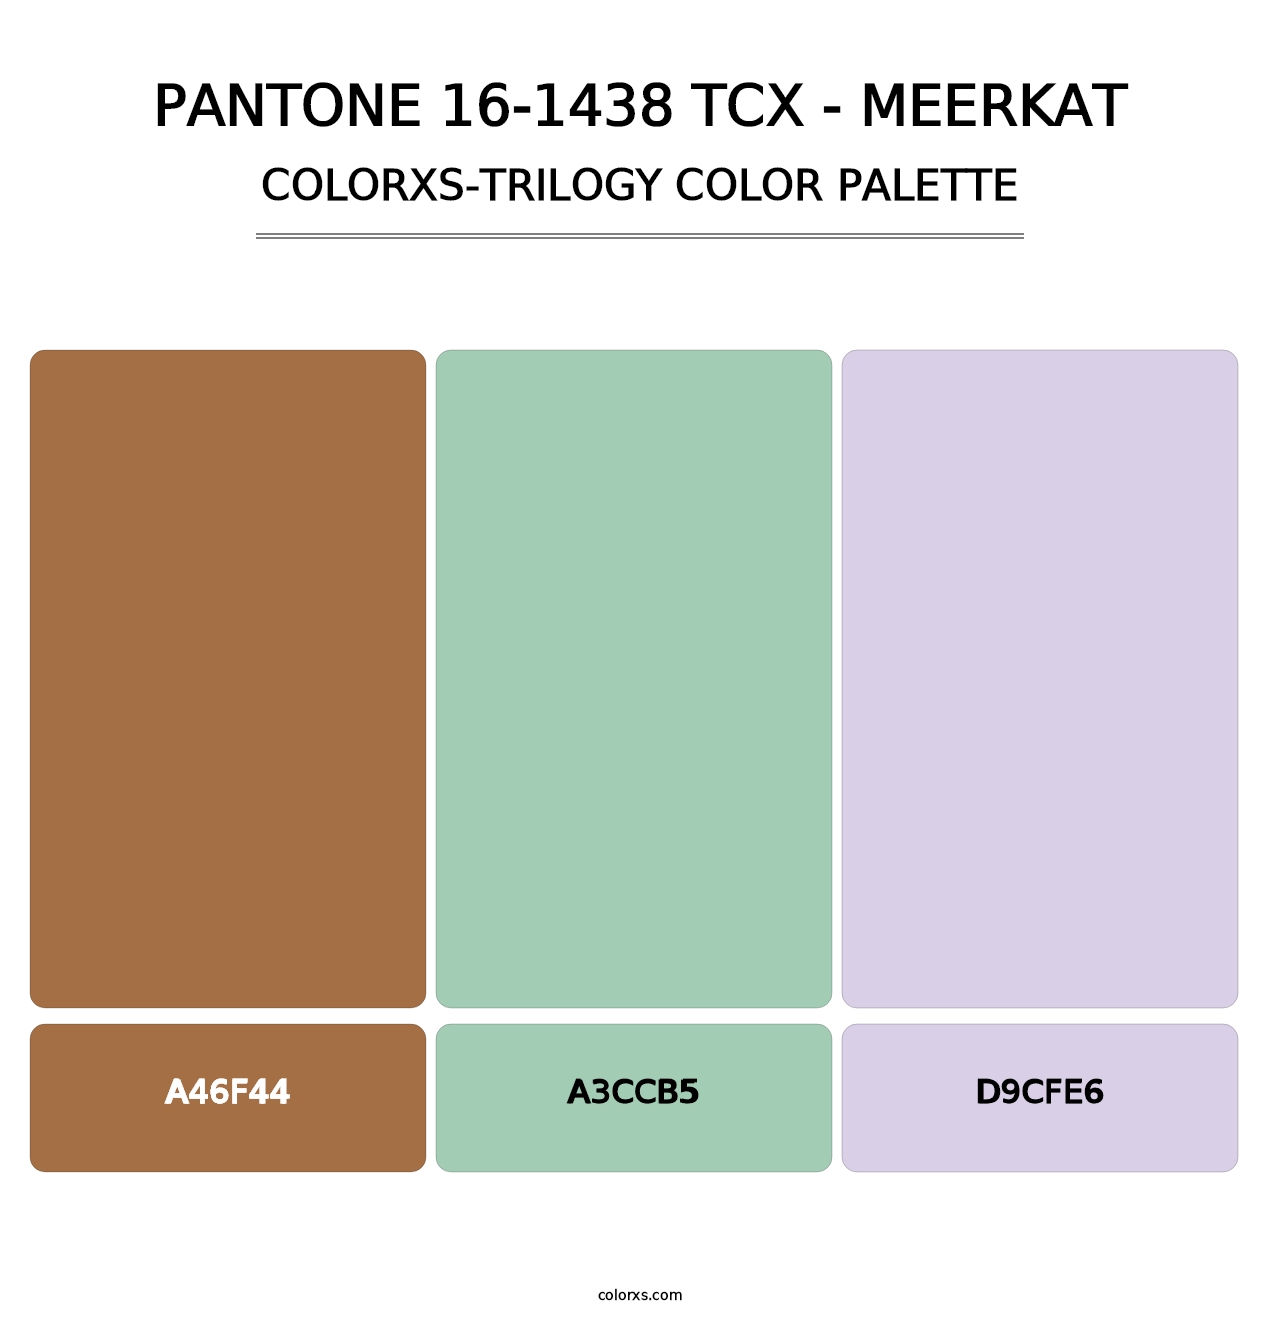 PANTONE 16-1438 TCX - Meerkat - Colorxs Trilogy Palette